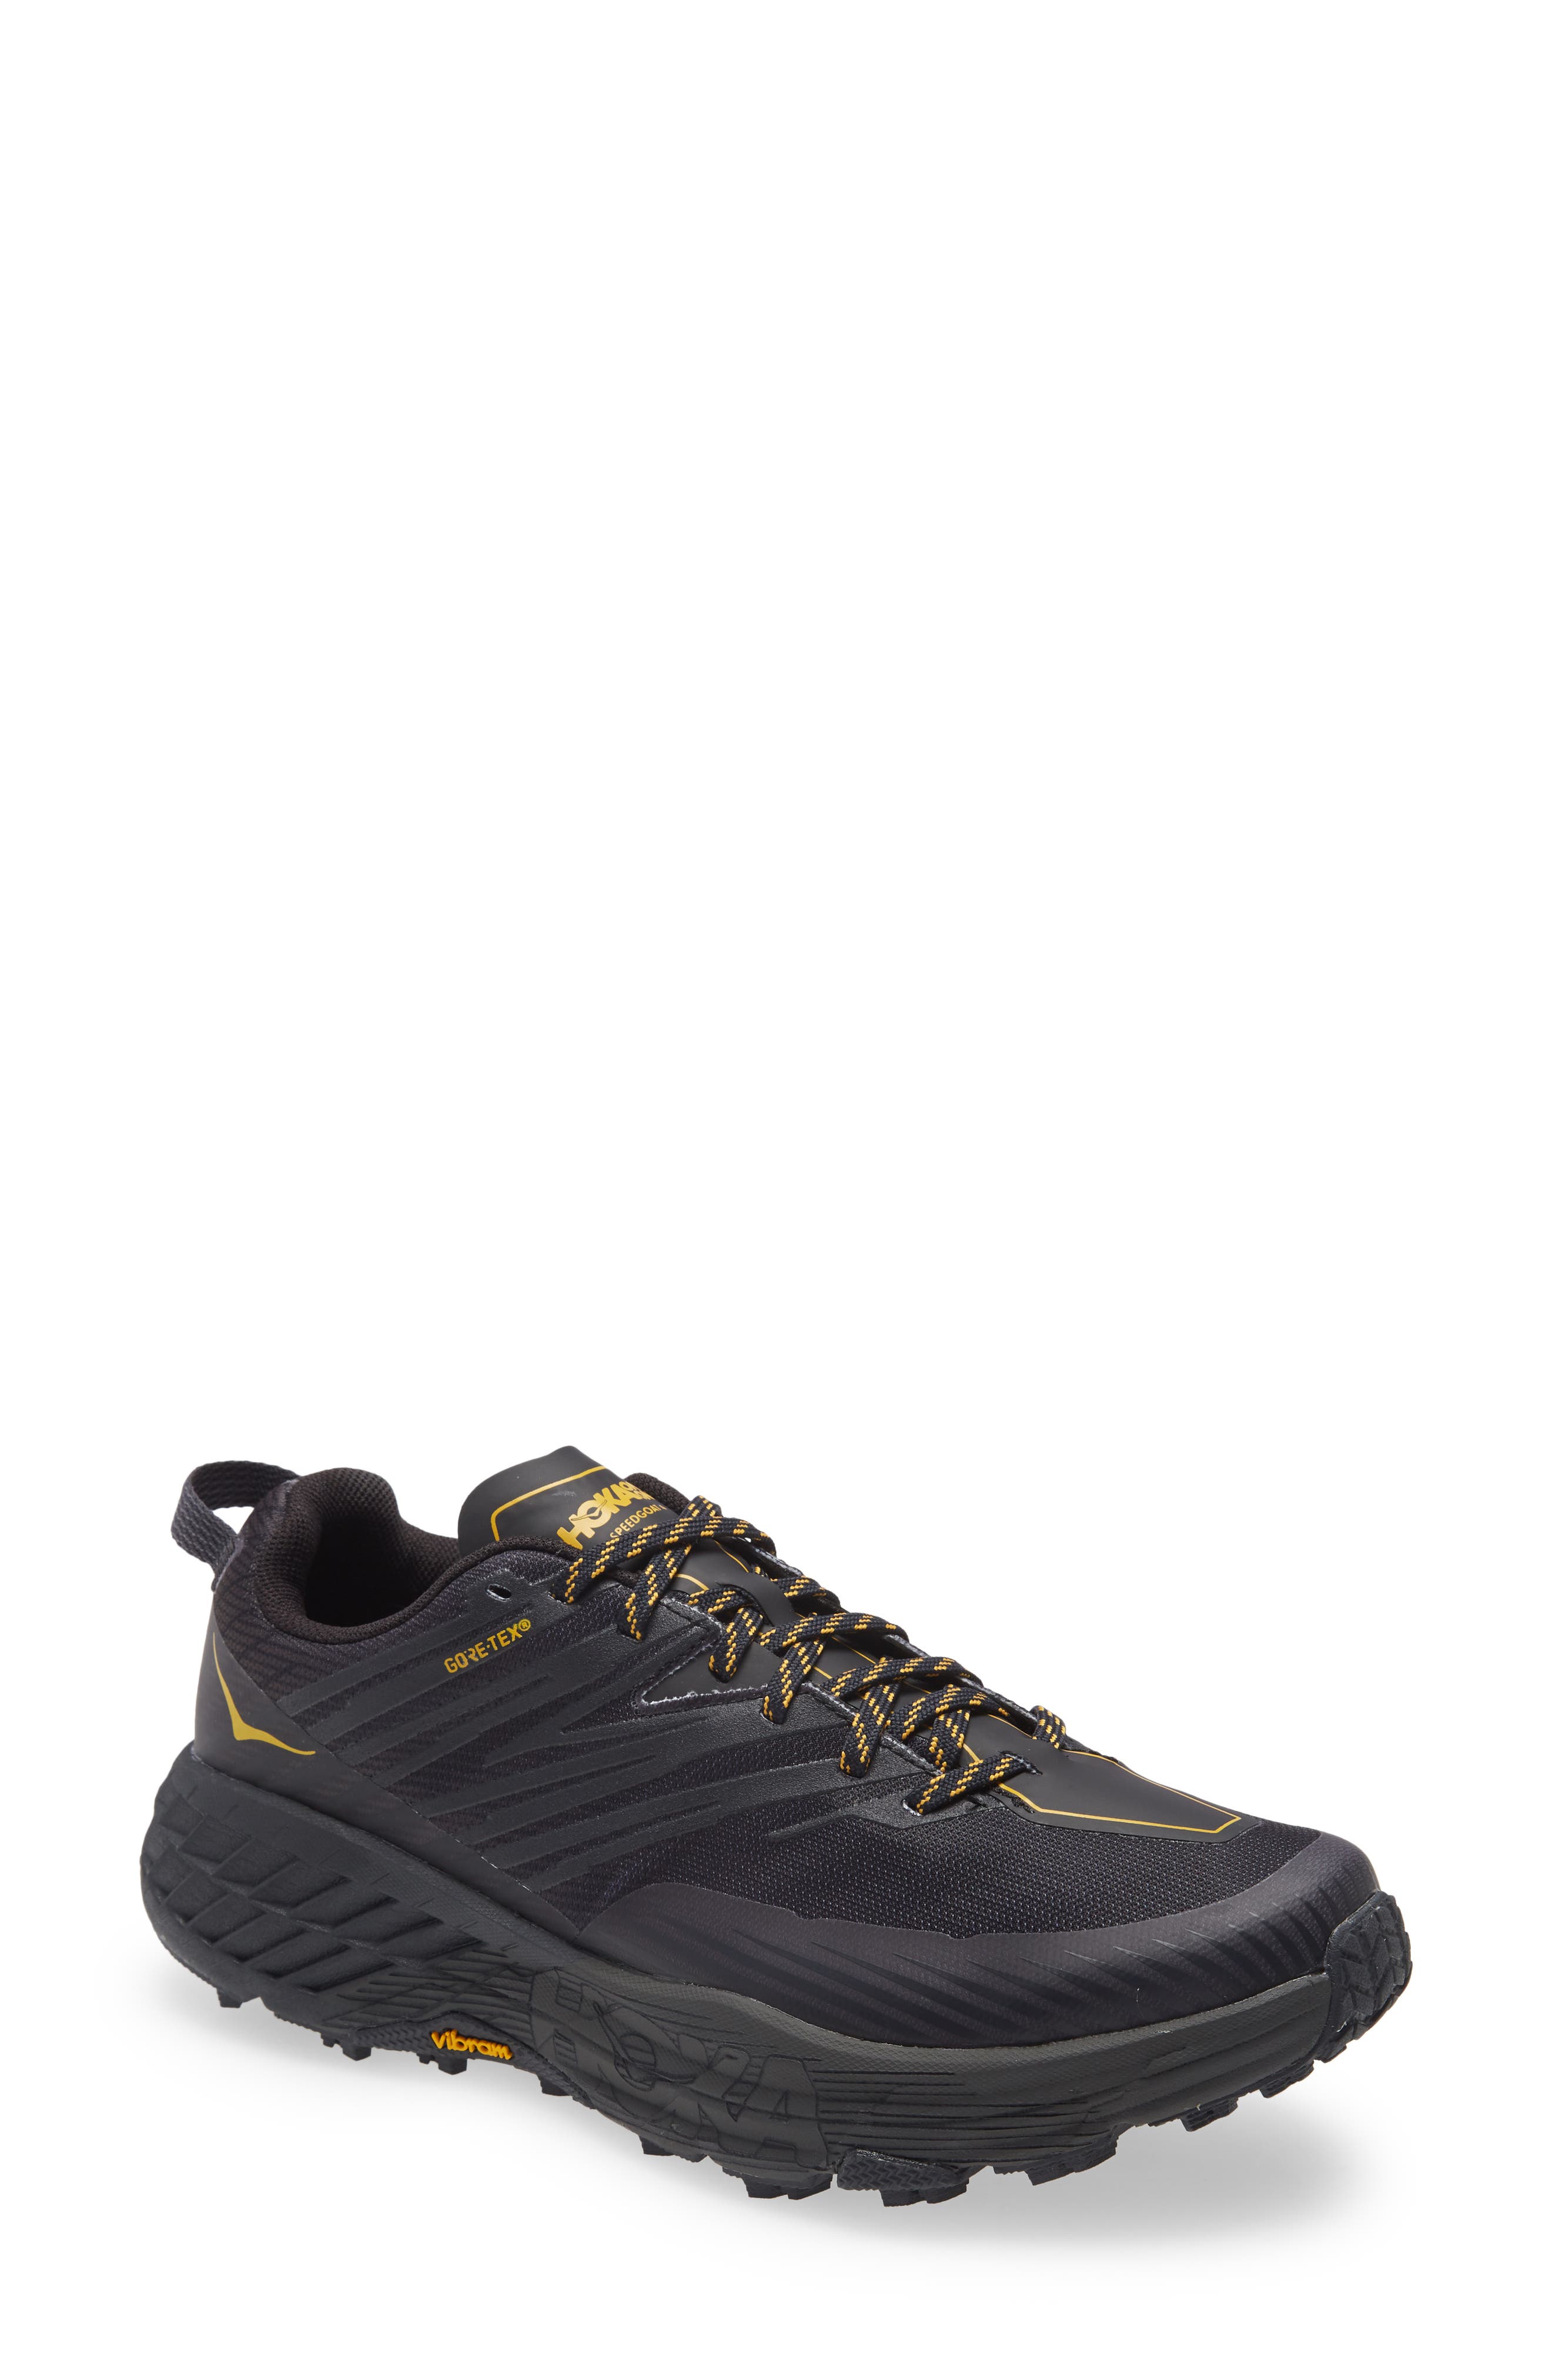 HOKA ONE ONE (R) Speedgoat 4 GTX Waterproof Trail Running Shoe in Anthracite /Dark Gull Grey